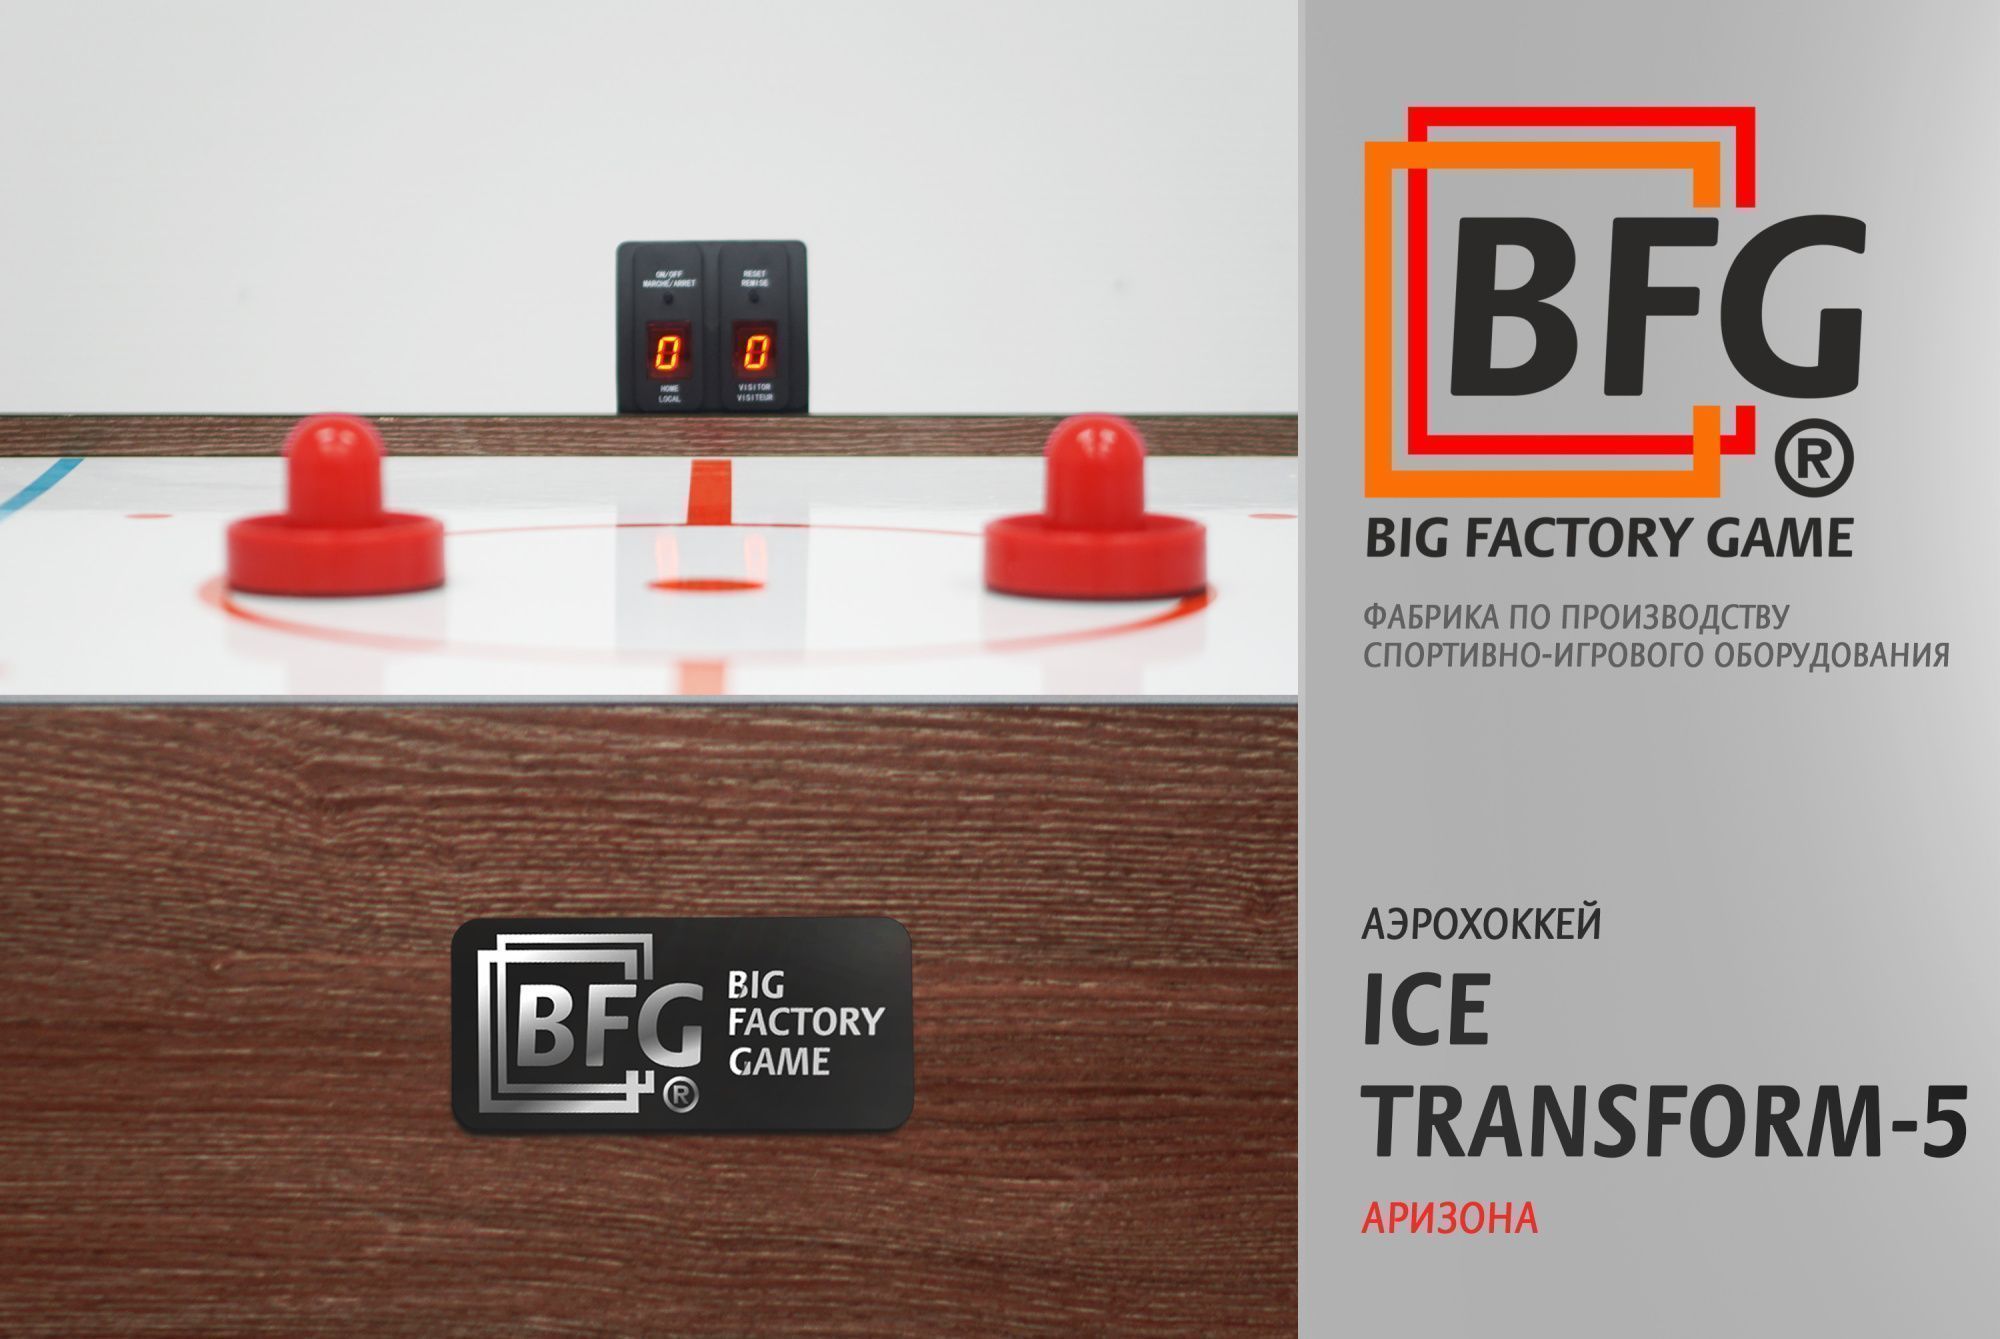 Аэрохоккей BFG Ice Transform 5 (Аризона)